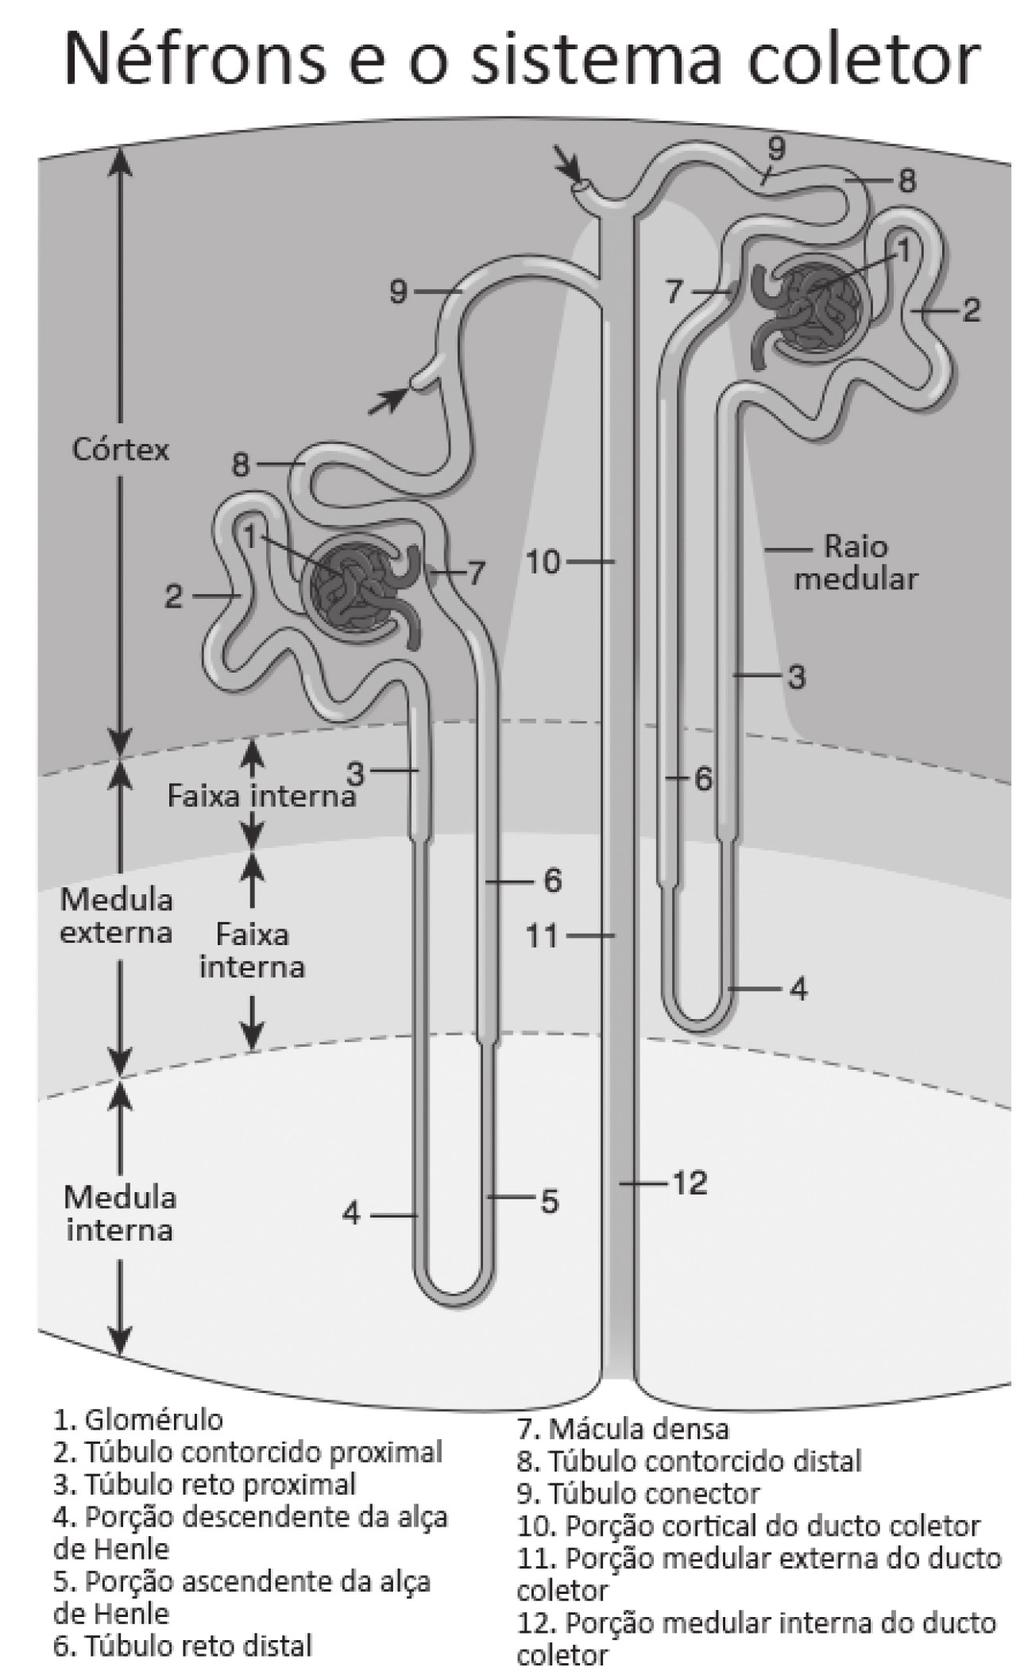 Comentários Nefrologia Anatomia e fisiologia renal Questão 1. O néfron consiste em corpúsculo renal (glomérulo) conectado a um túbulo complexo e torcido que finalmente drena em um ducto coletor.